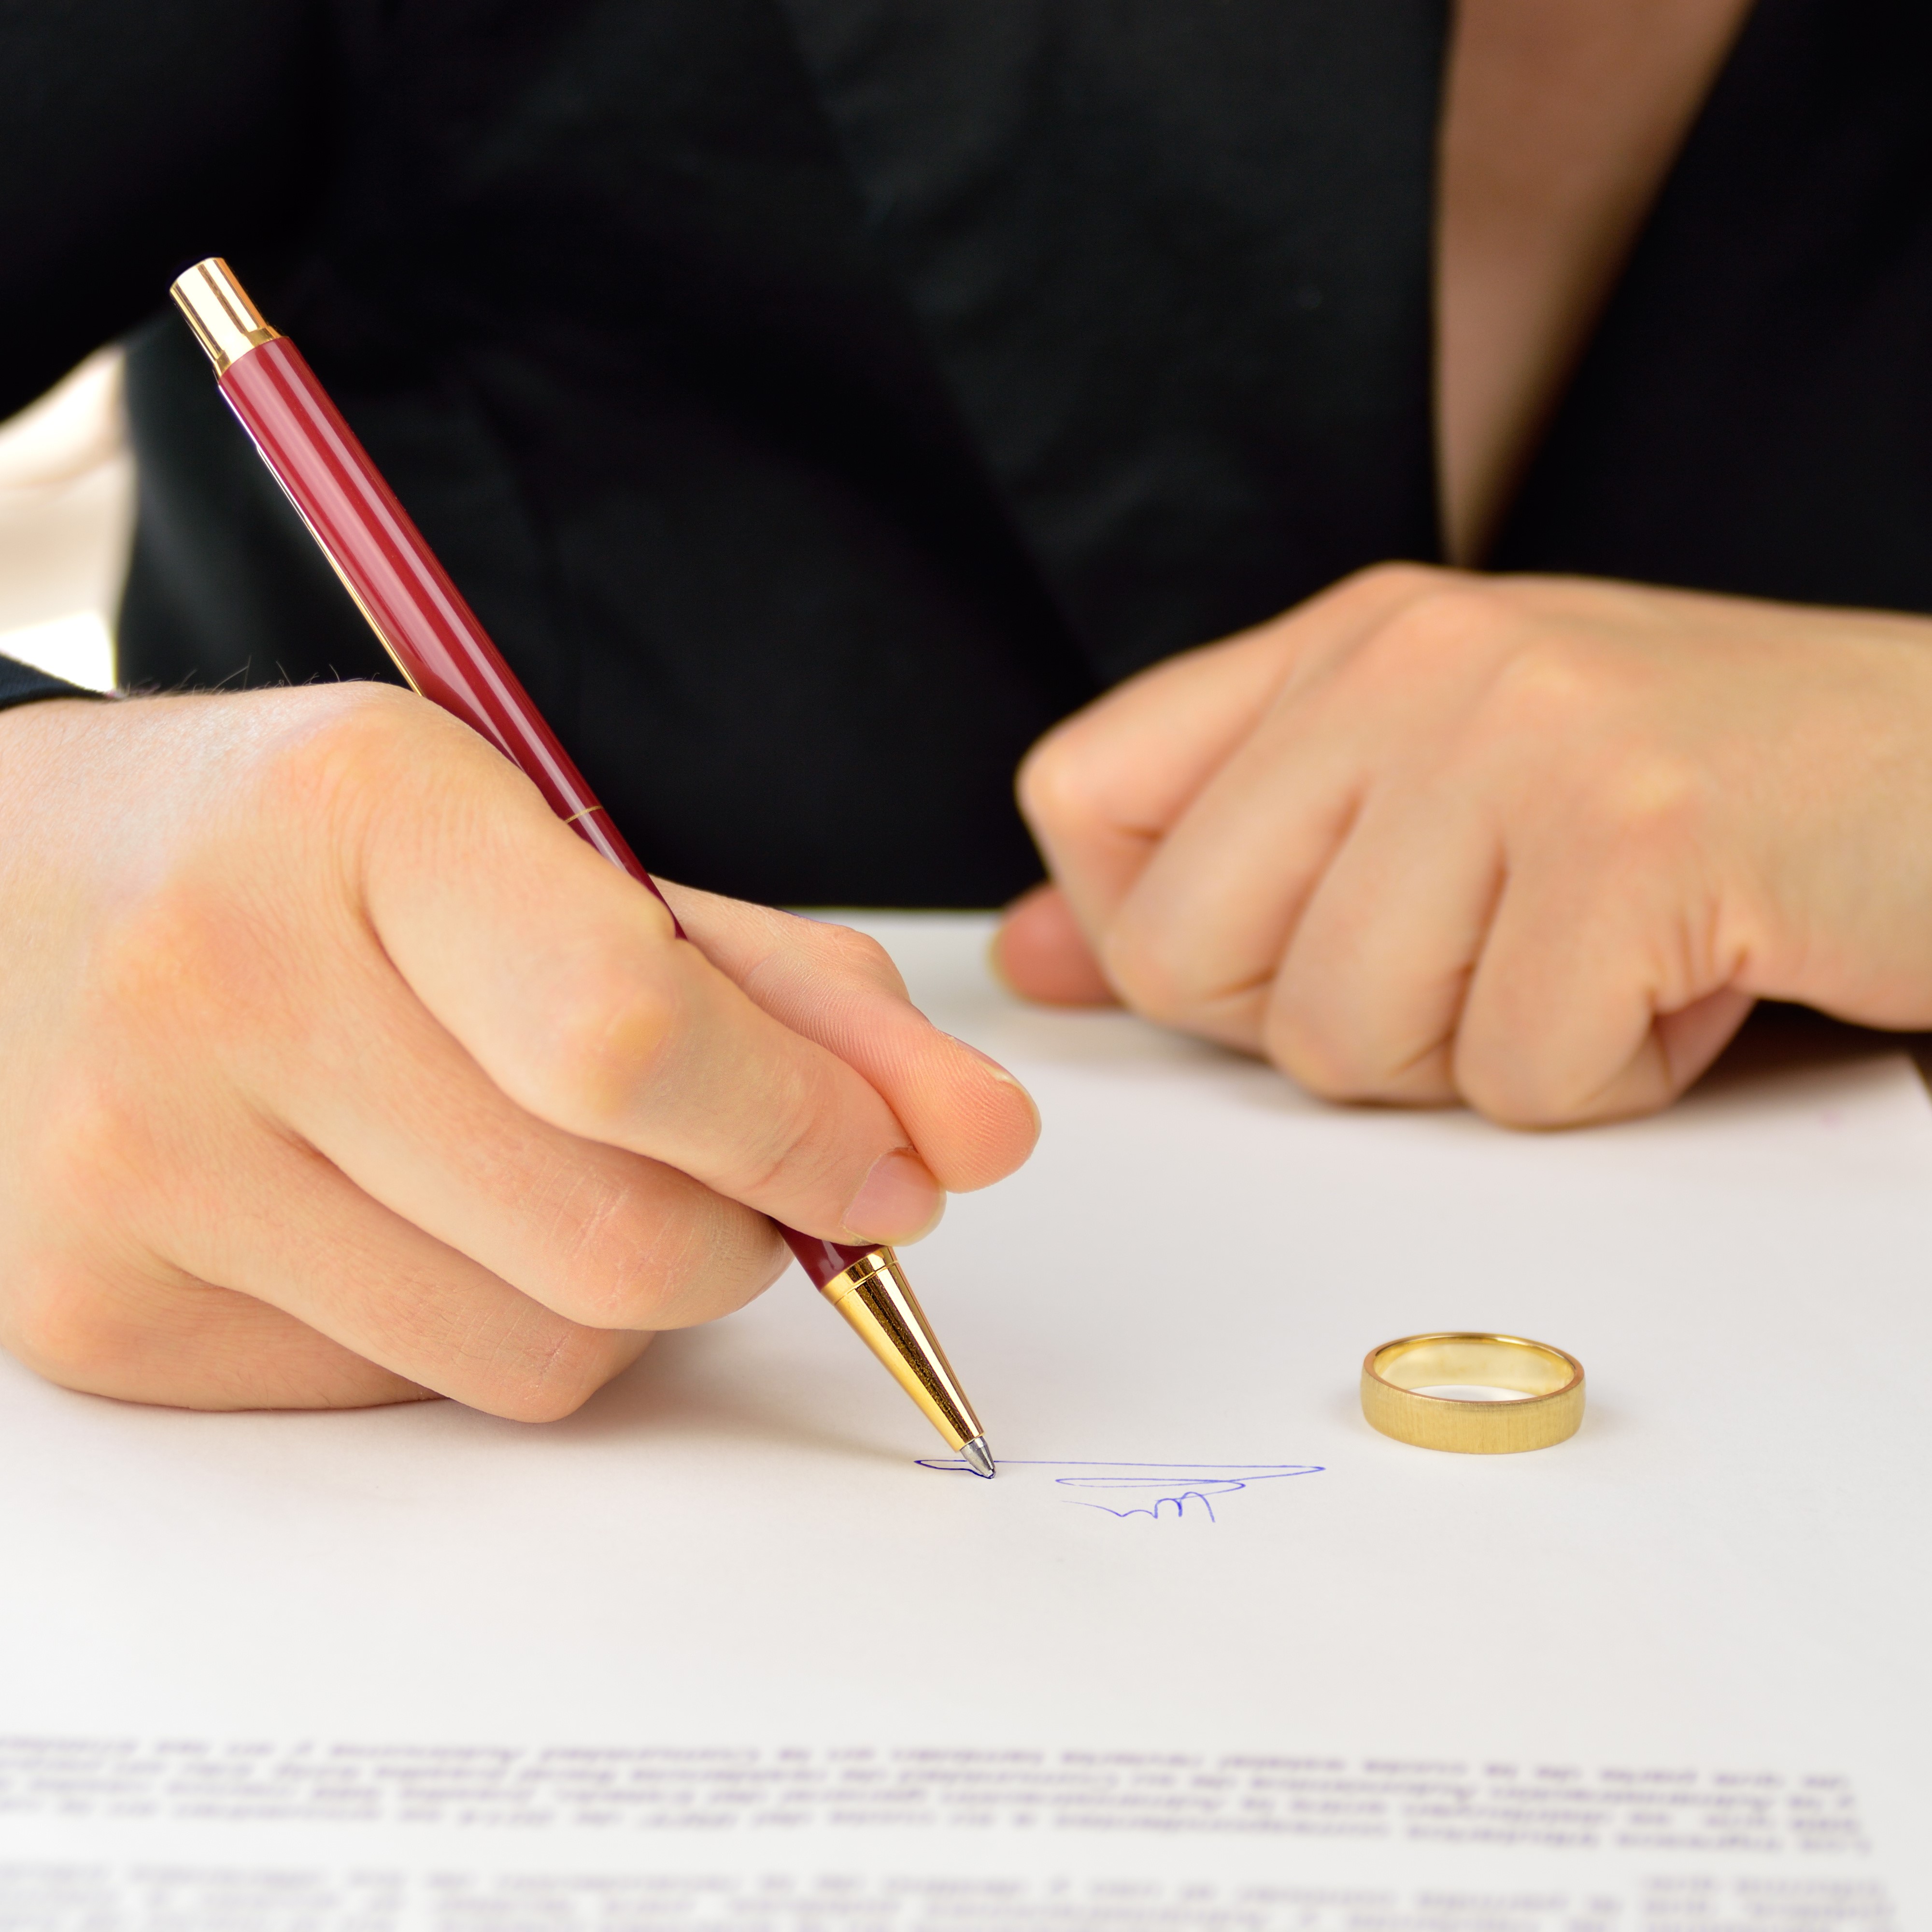 Contract de mariage français vs prenup anglais